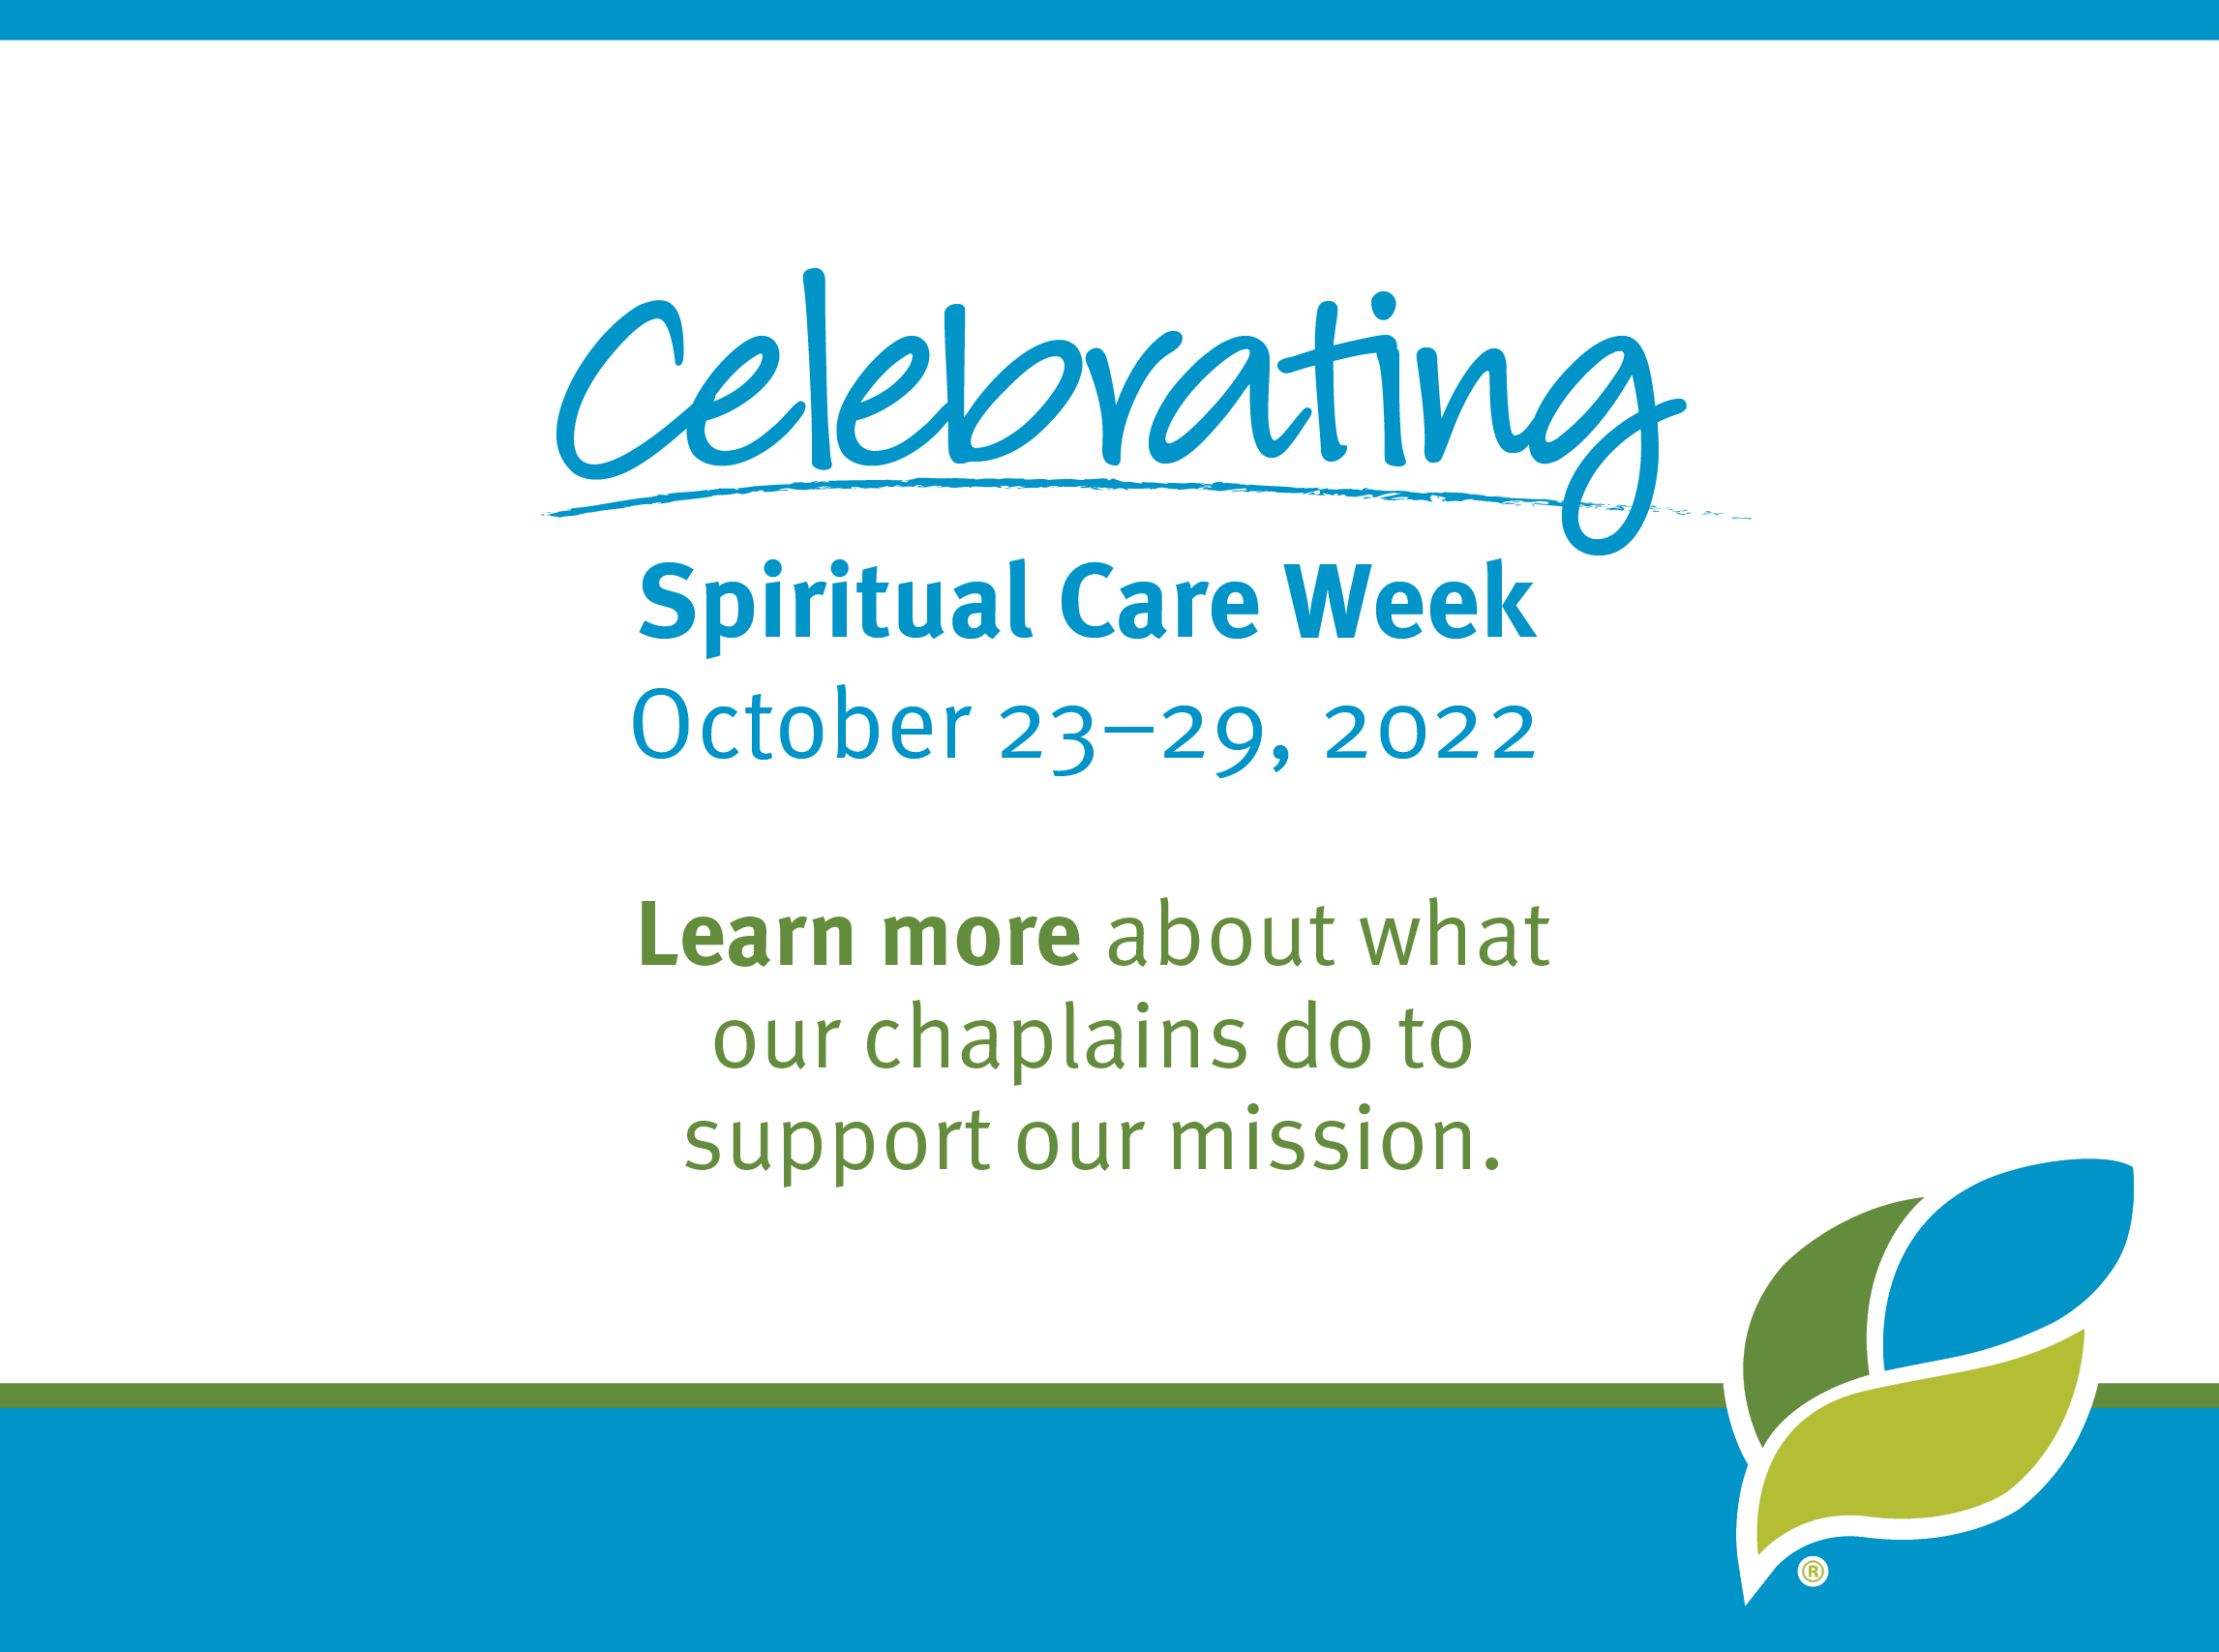 Celebrating Spiritual Care Week October 23-29, 2022